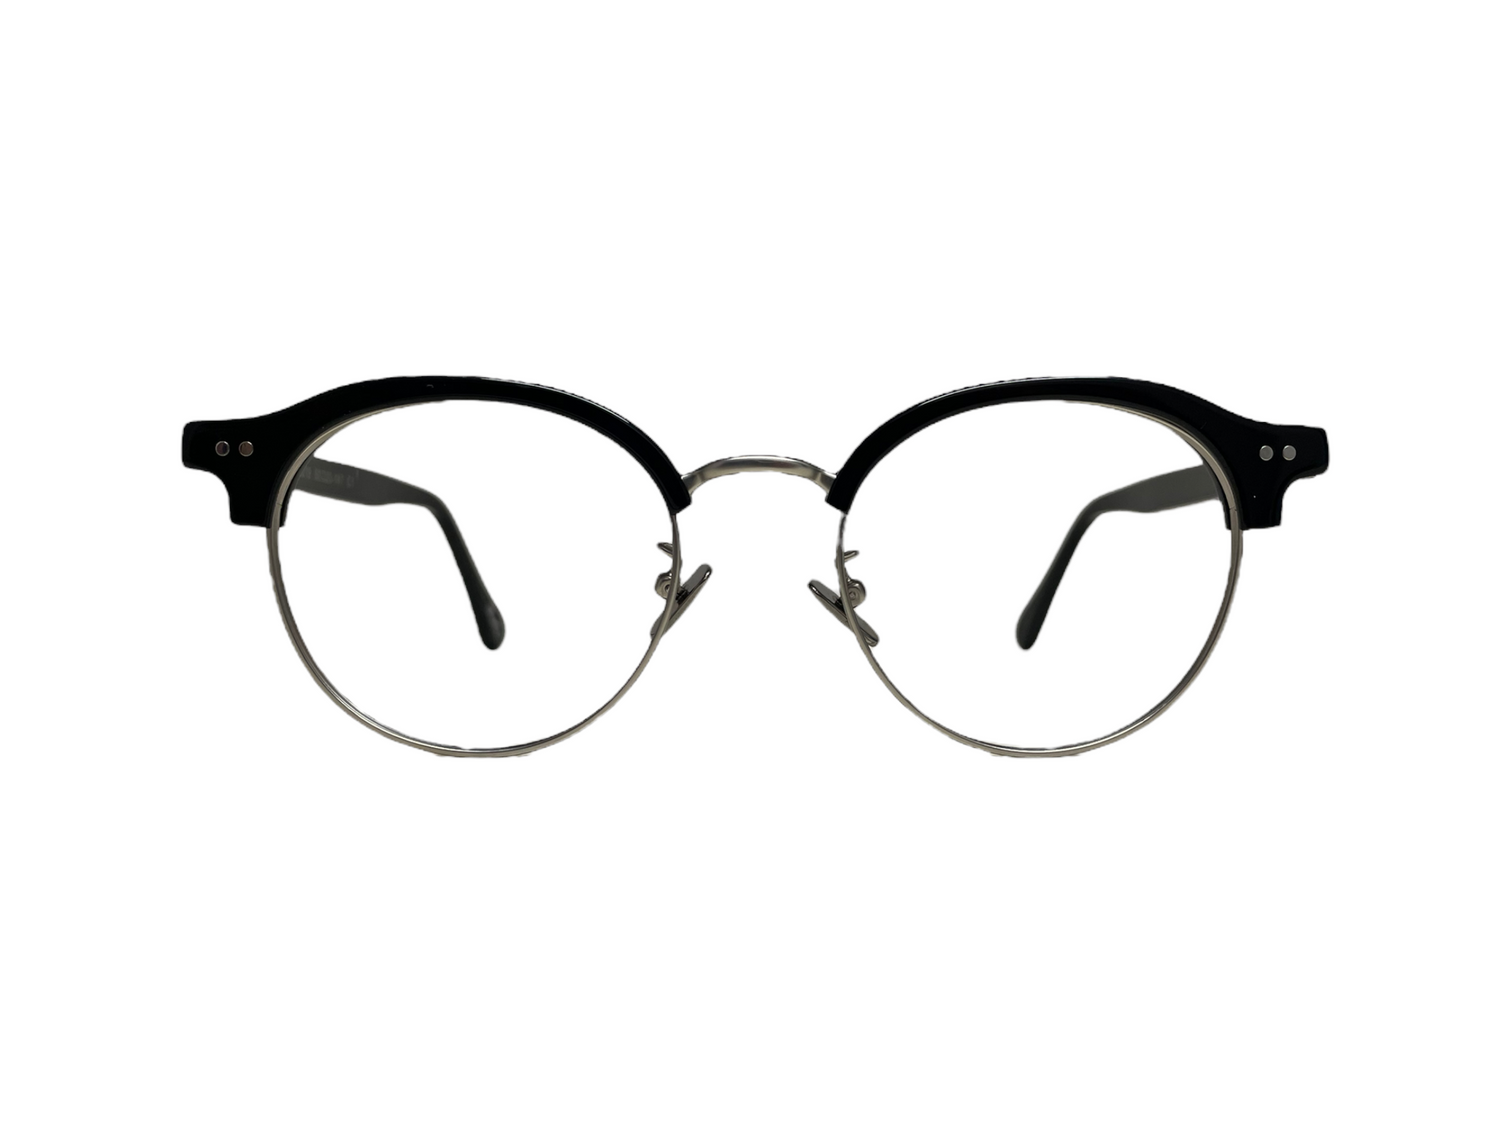 Eyeglasses – Just Eyeglasses